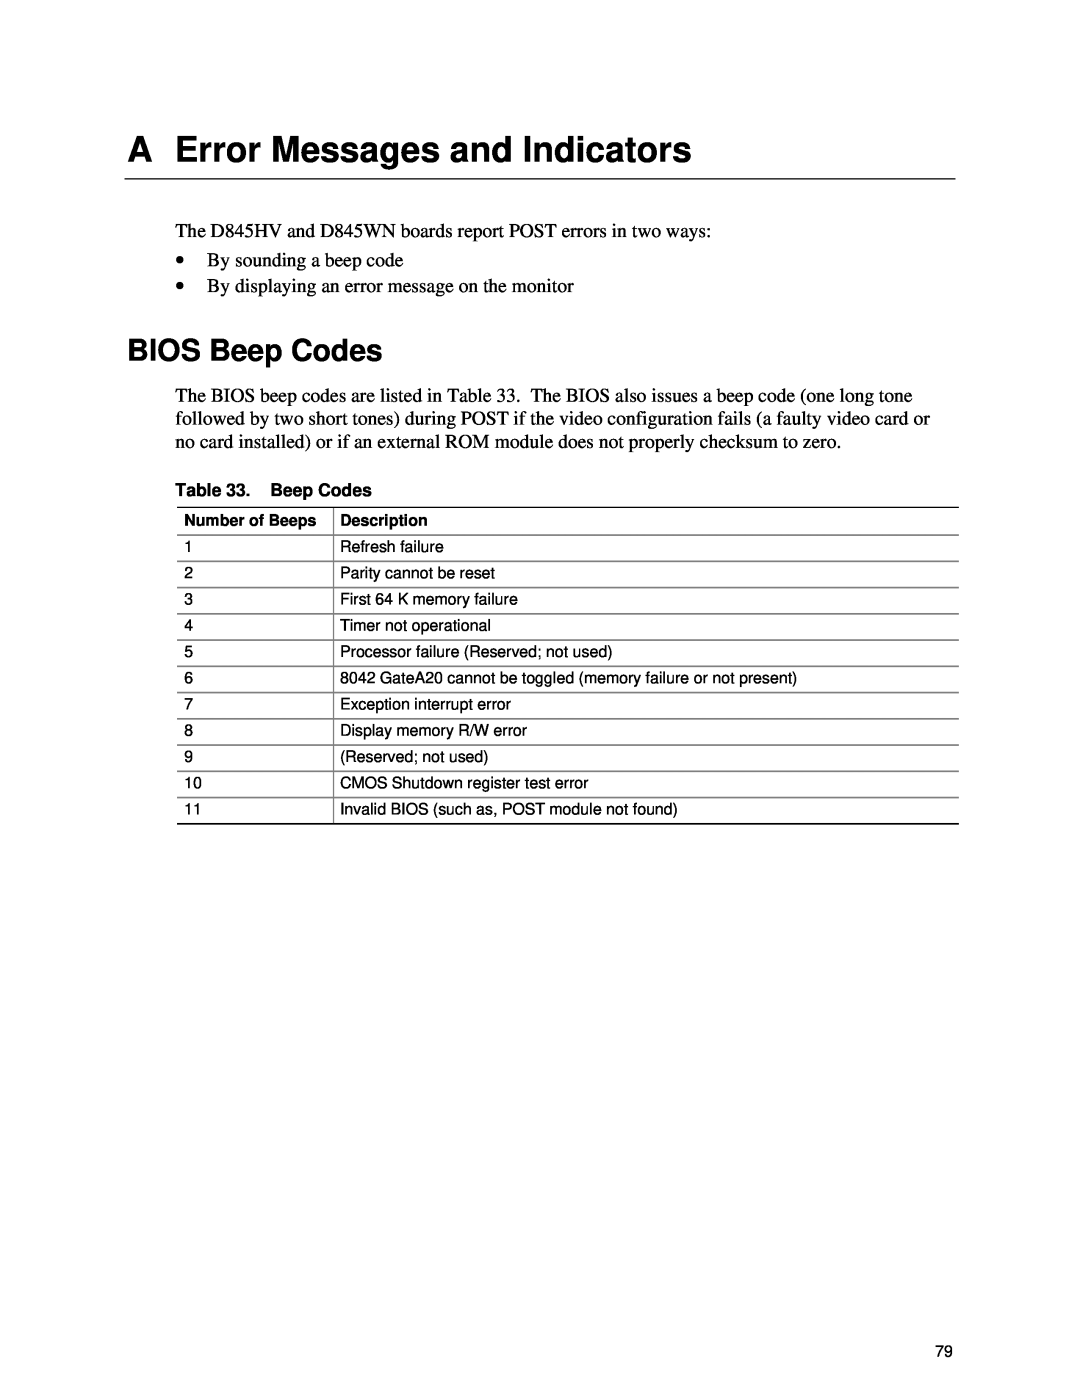 Intel D845HV, D845WN manual A Error Messages and Indicators, BIOS Beep Codes 